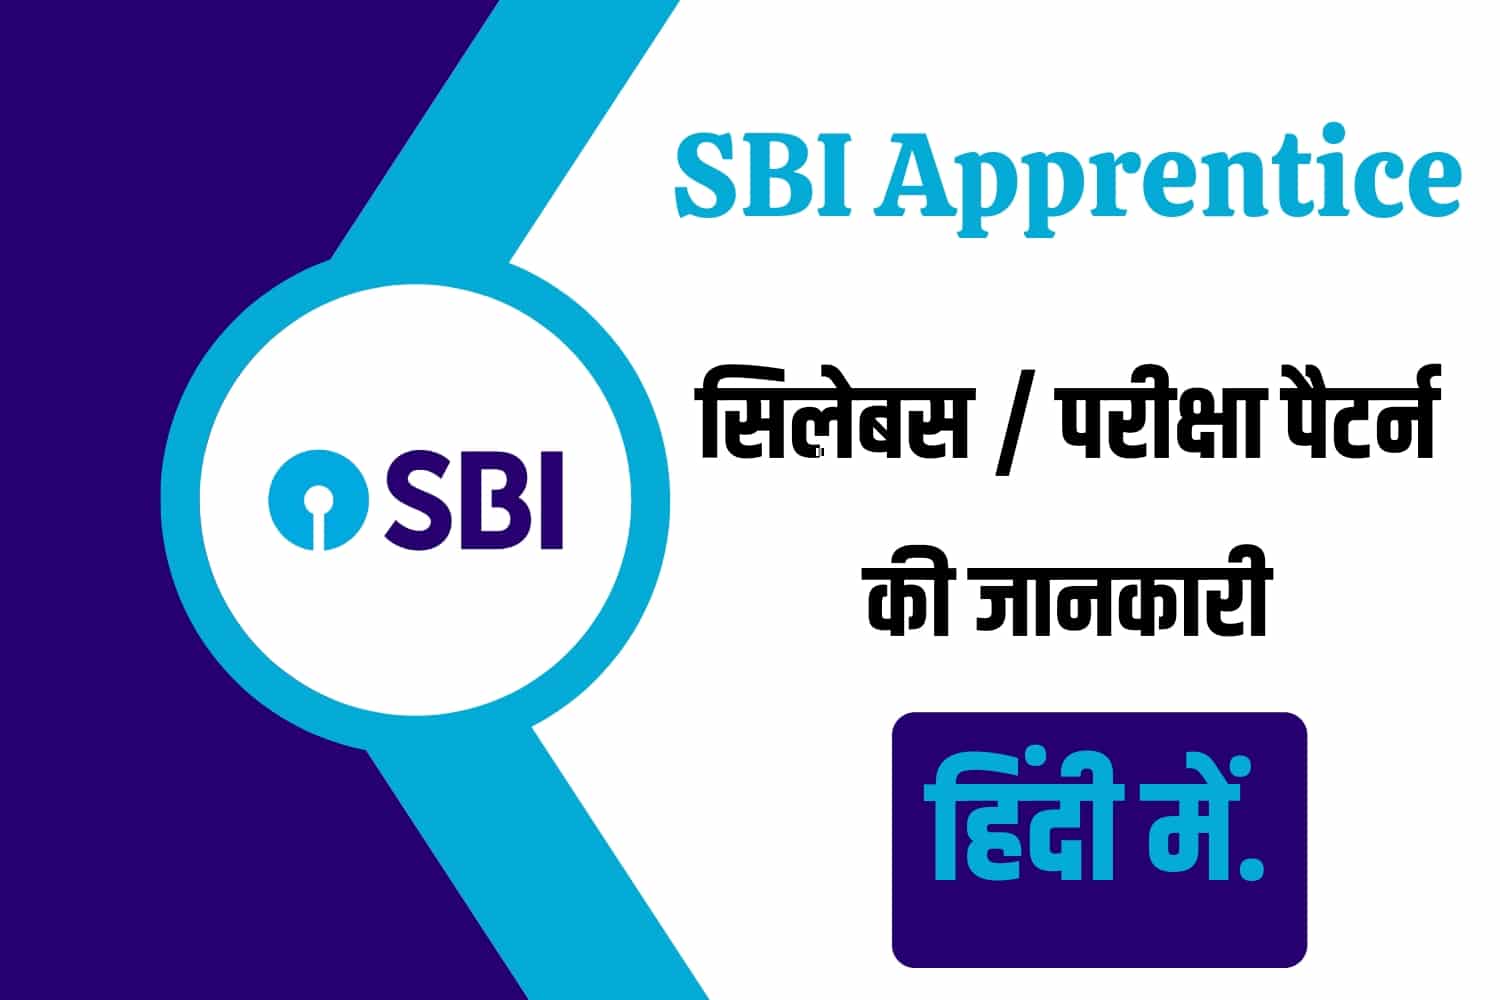 SBI Apprentice Syllabus In Hindi | स्टेट बैंक ऑफ इंडिया अप्रेंटिस सिलेबस हिंदी में